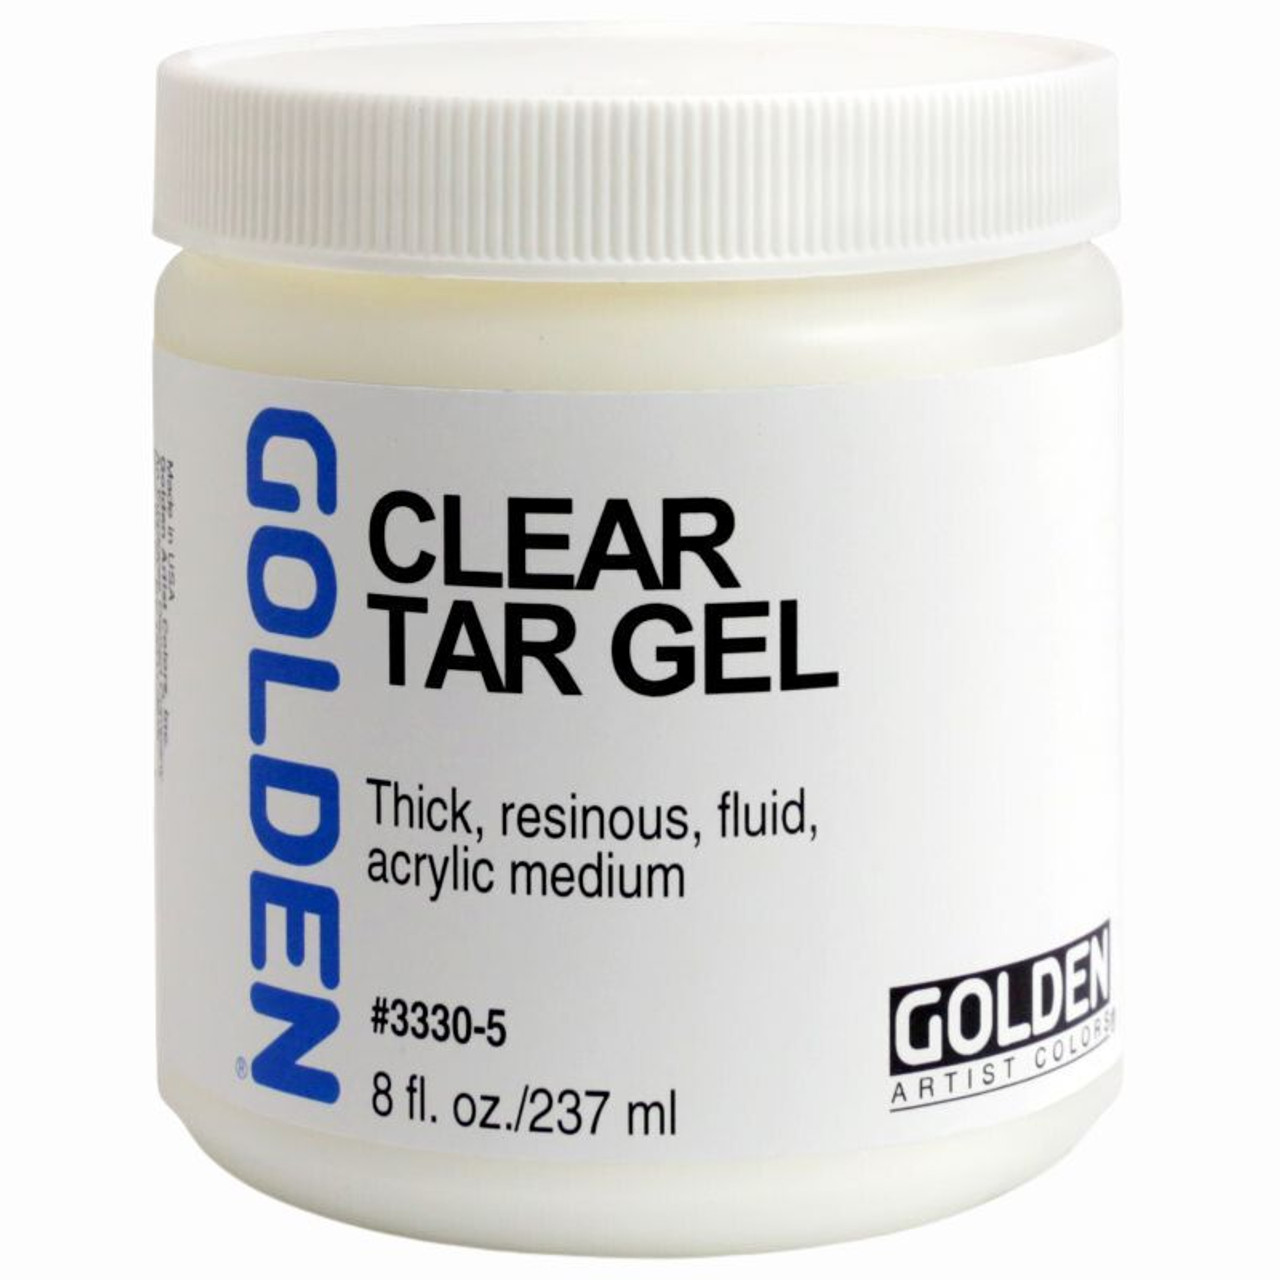 Golden Clear Tar Gel Medium - FLAX art & design